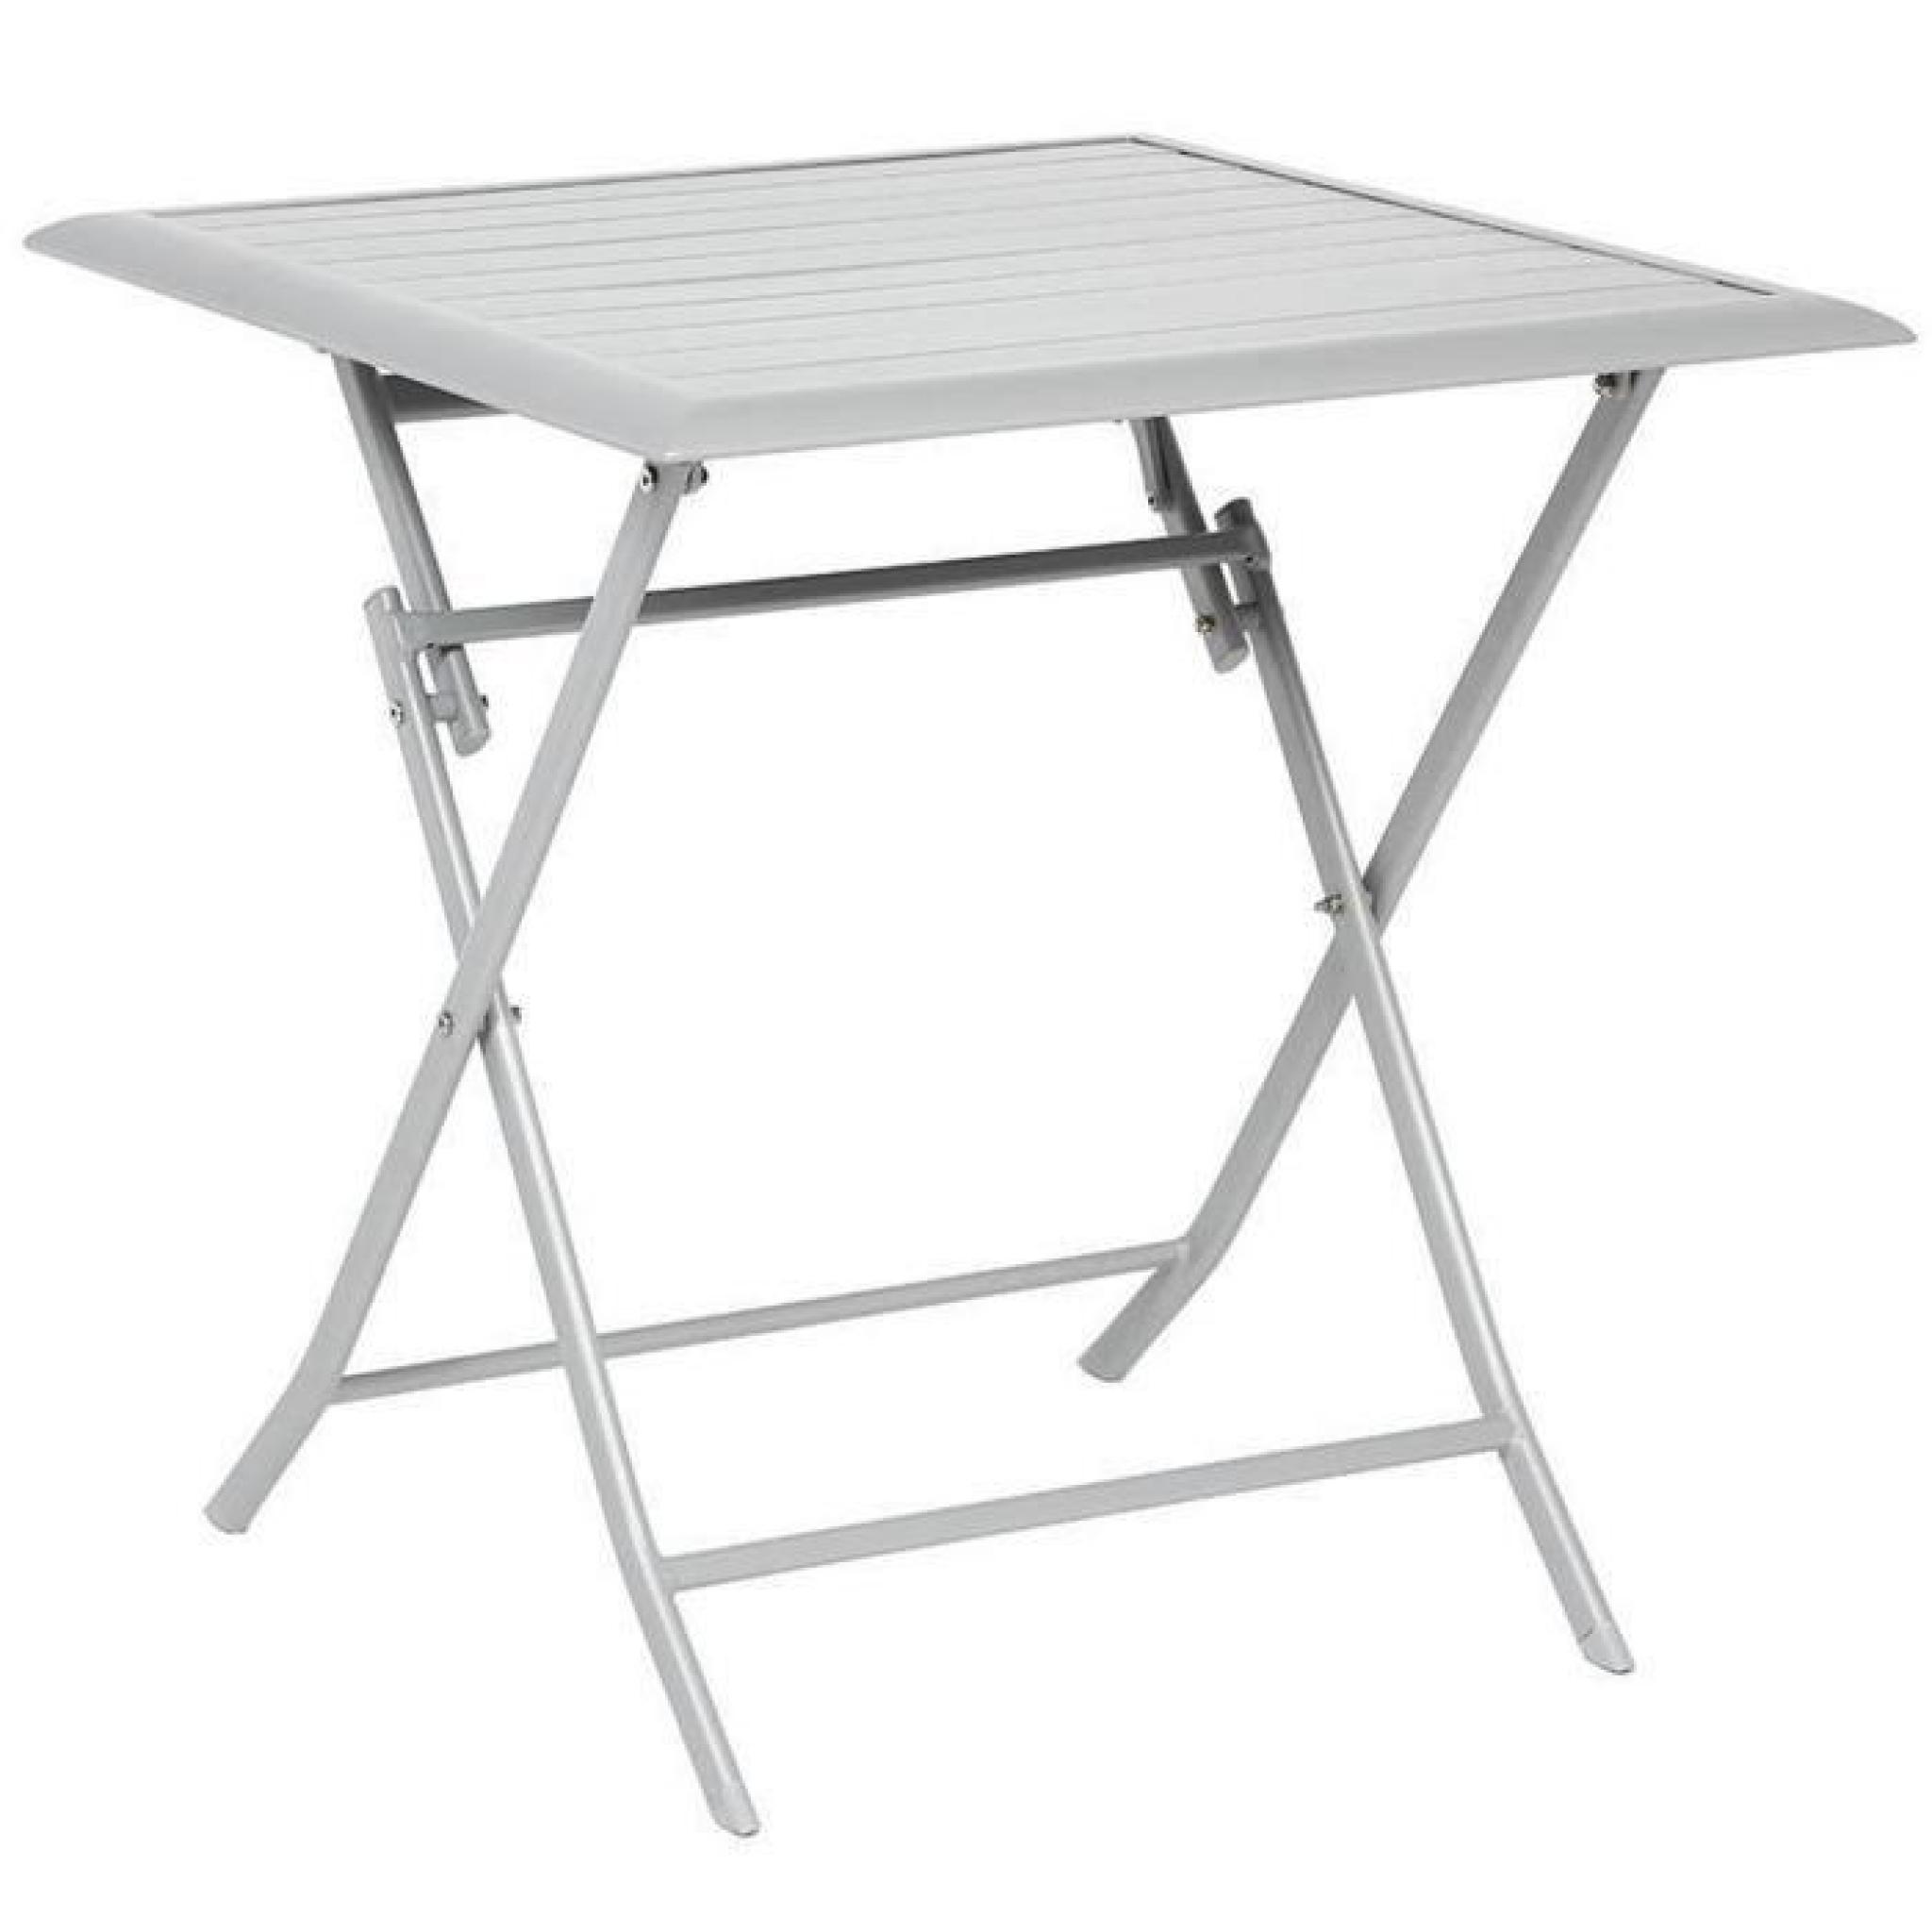 Table pliante carrée en Aluminium coloris silver mat - Dim : L71cm x P71cm x H71cm 